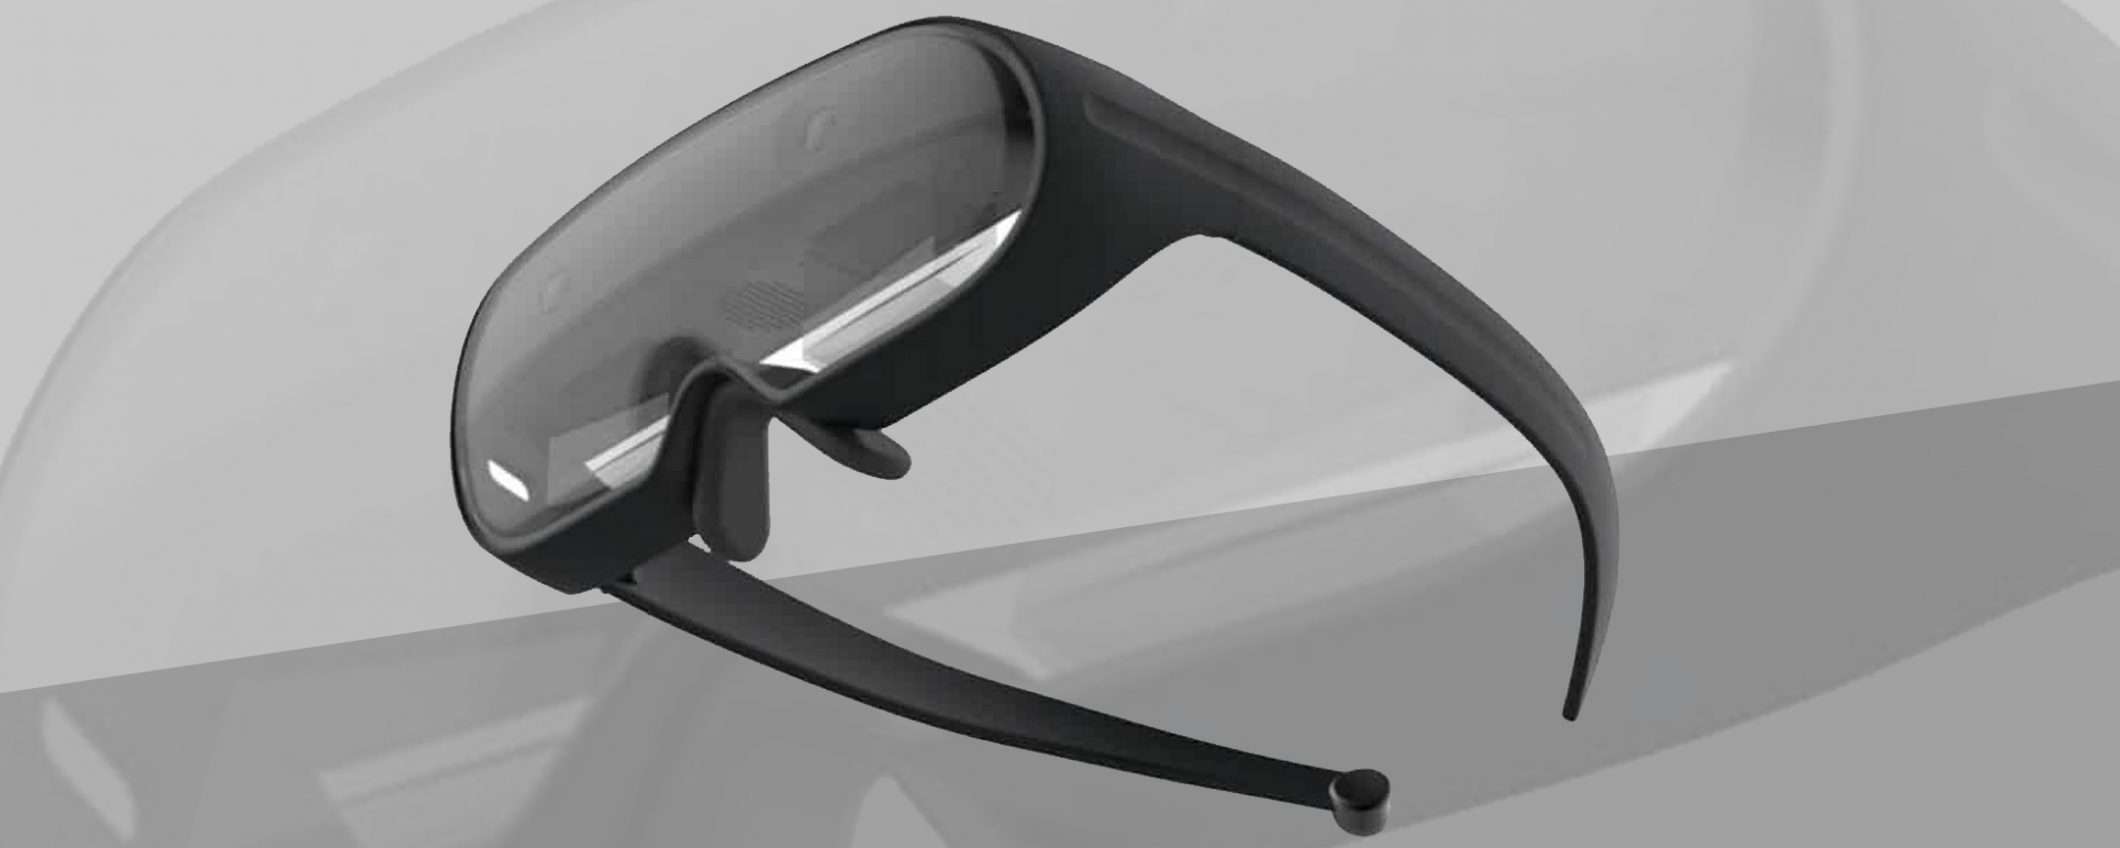 Il dispositivo AR di Samsung: occhiali o visore?